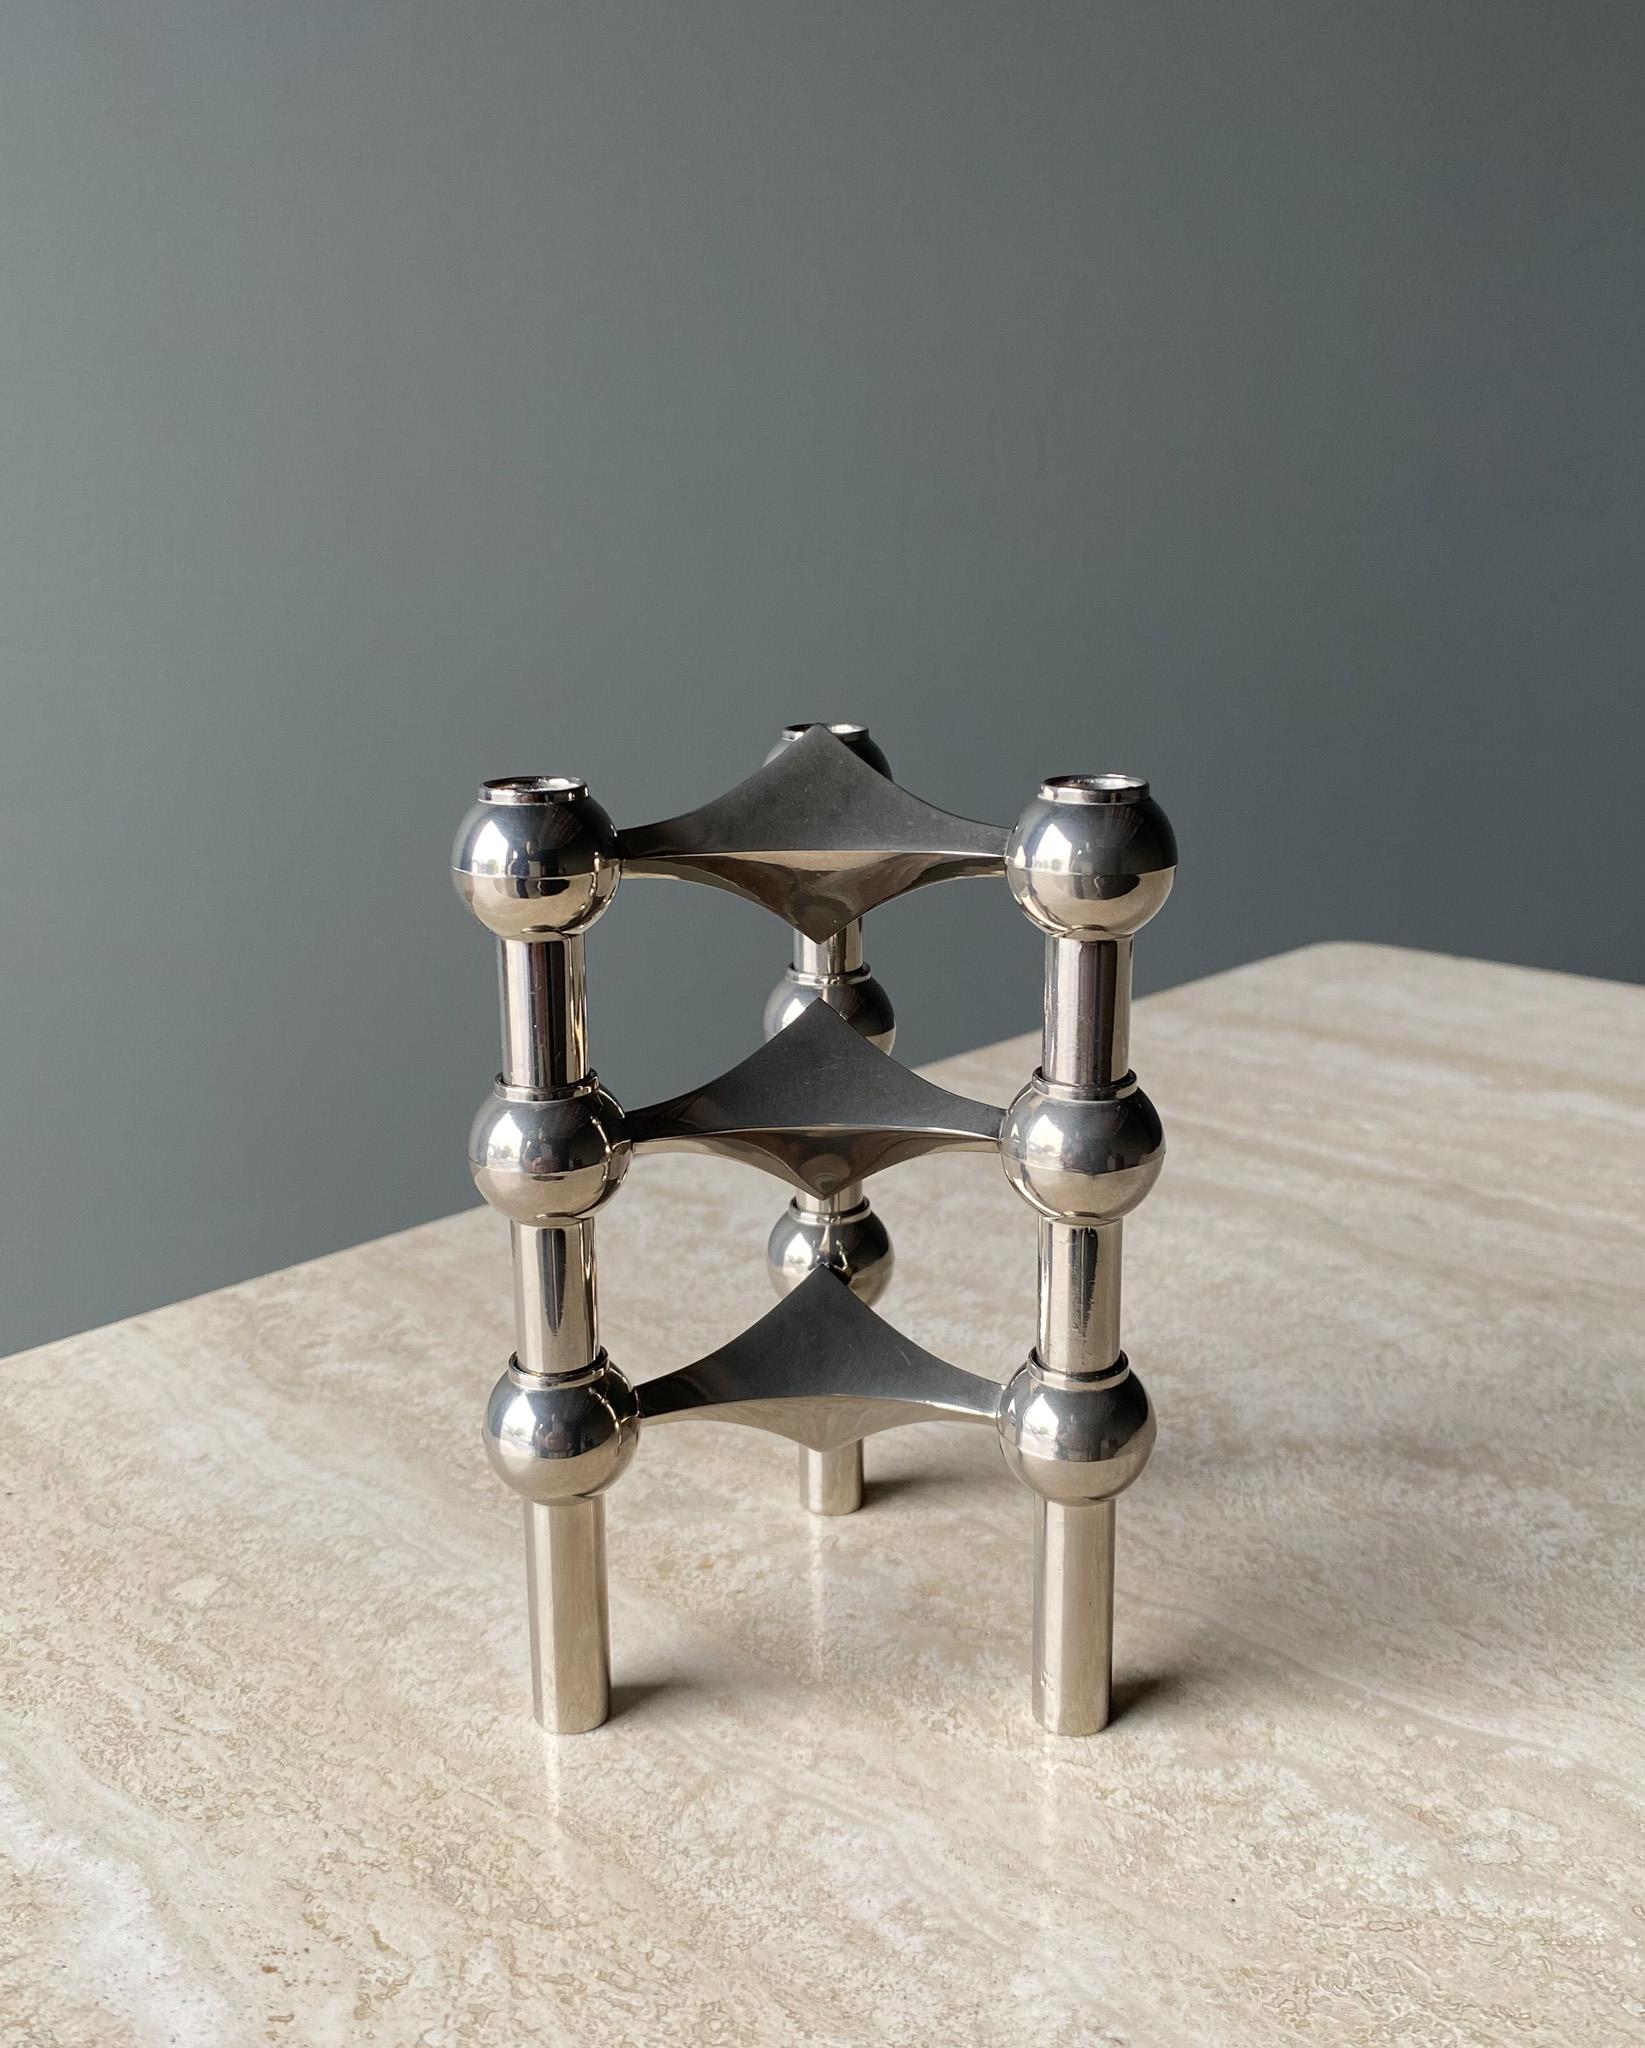 Stoff Nagel Candleholder Designed by Werner Stoff for Metalworker Hans Nagel 4